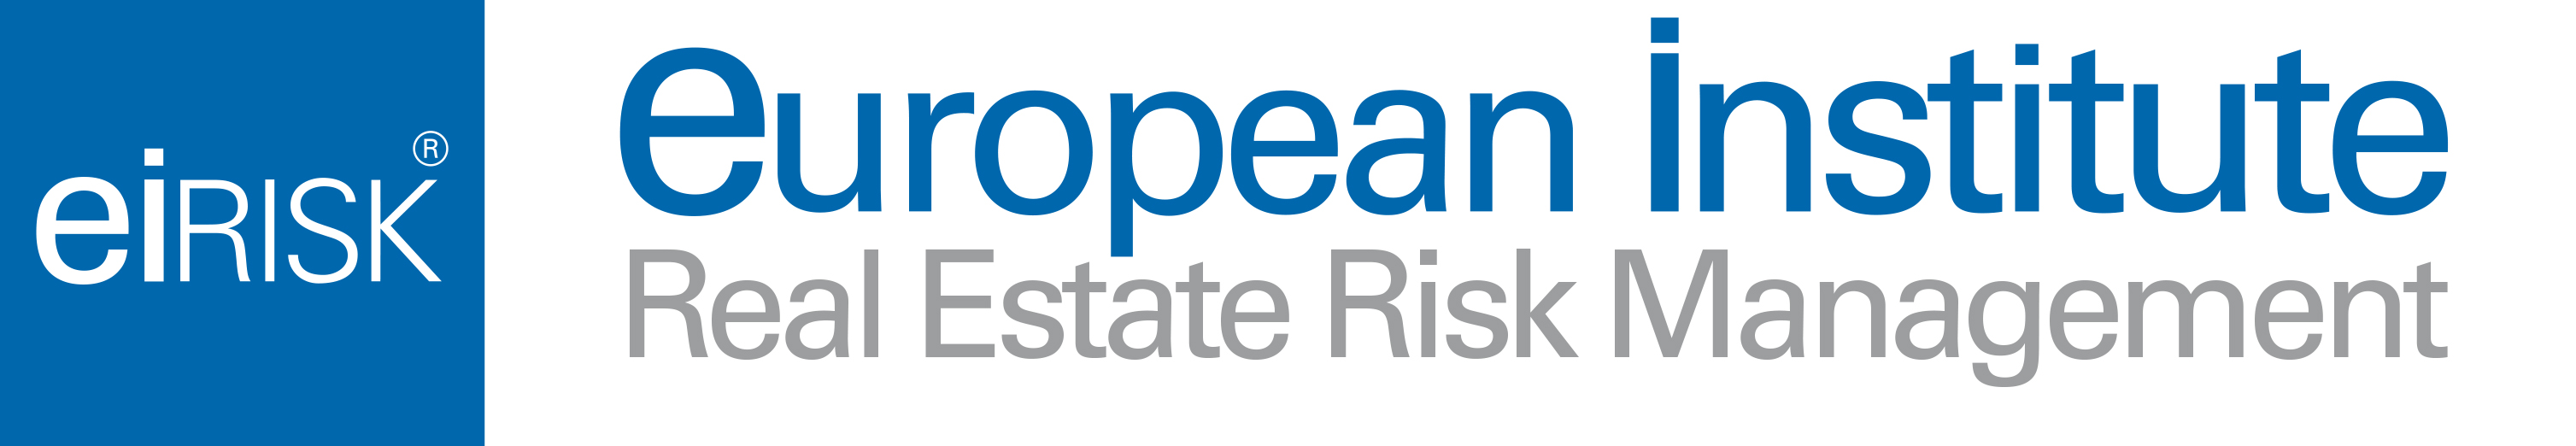 Real Estate Risk®Manager